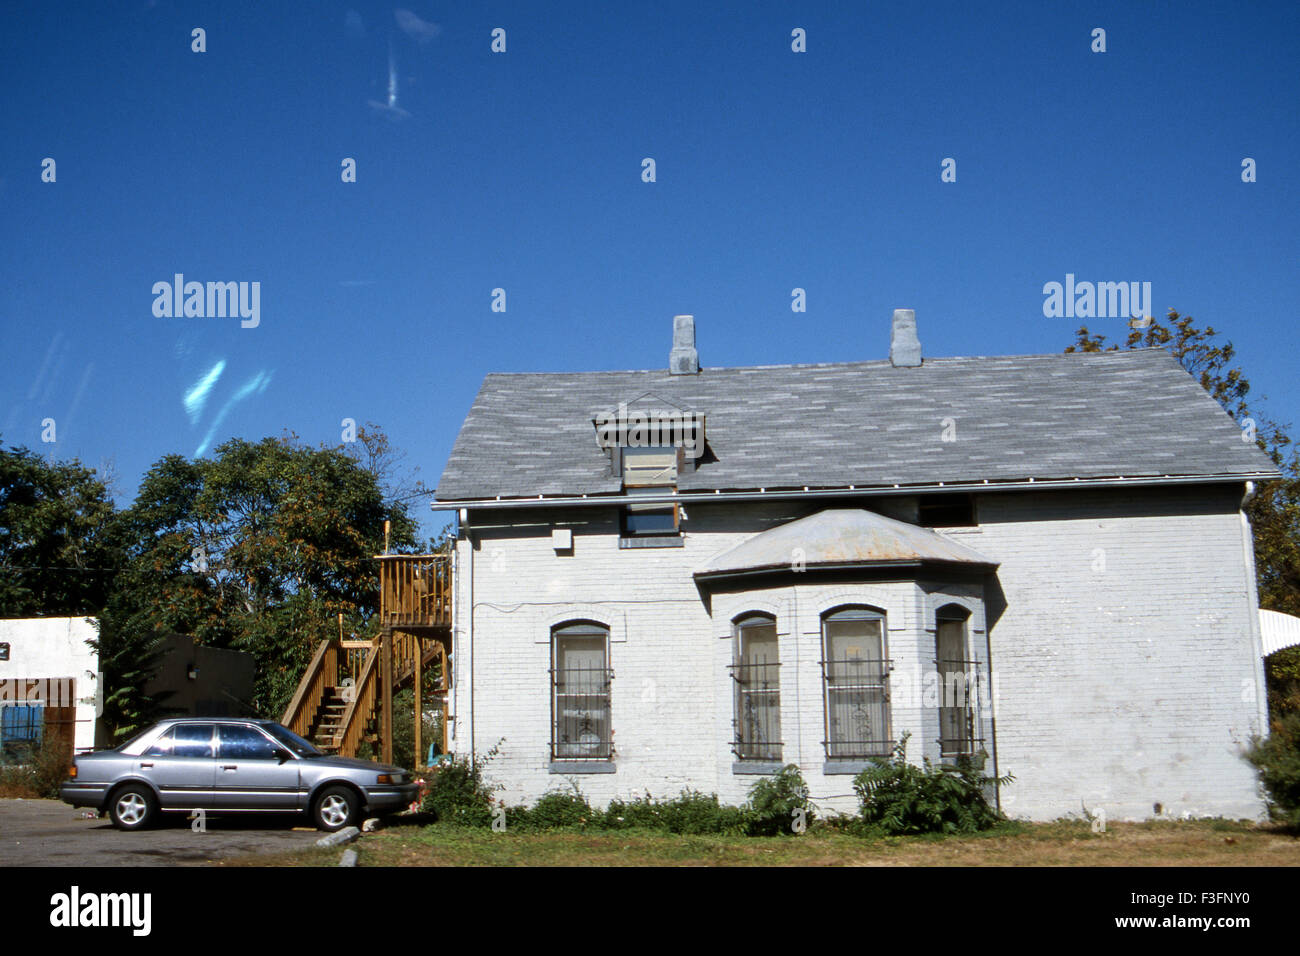 Maison construite au début du xixe siècle dans la vieille ville de Denver ; U.S.A. ; Etats-Unis d'Amérique Banque D'Images